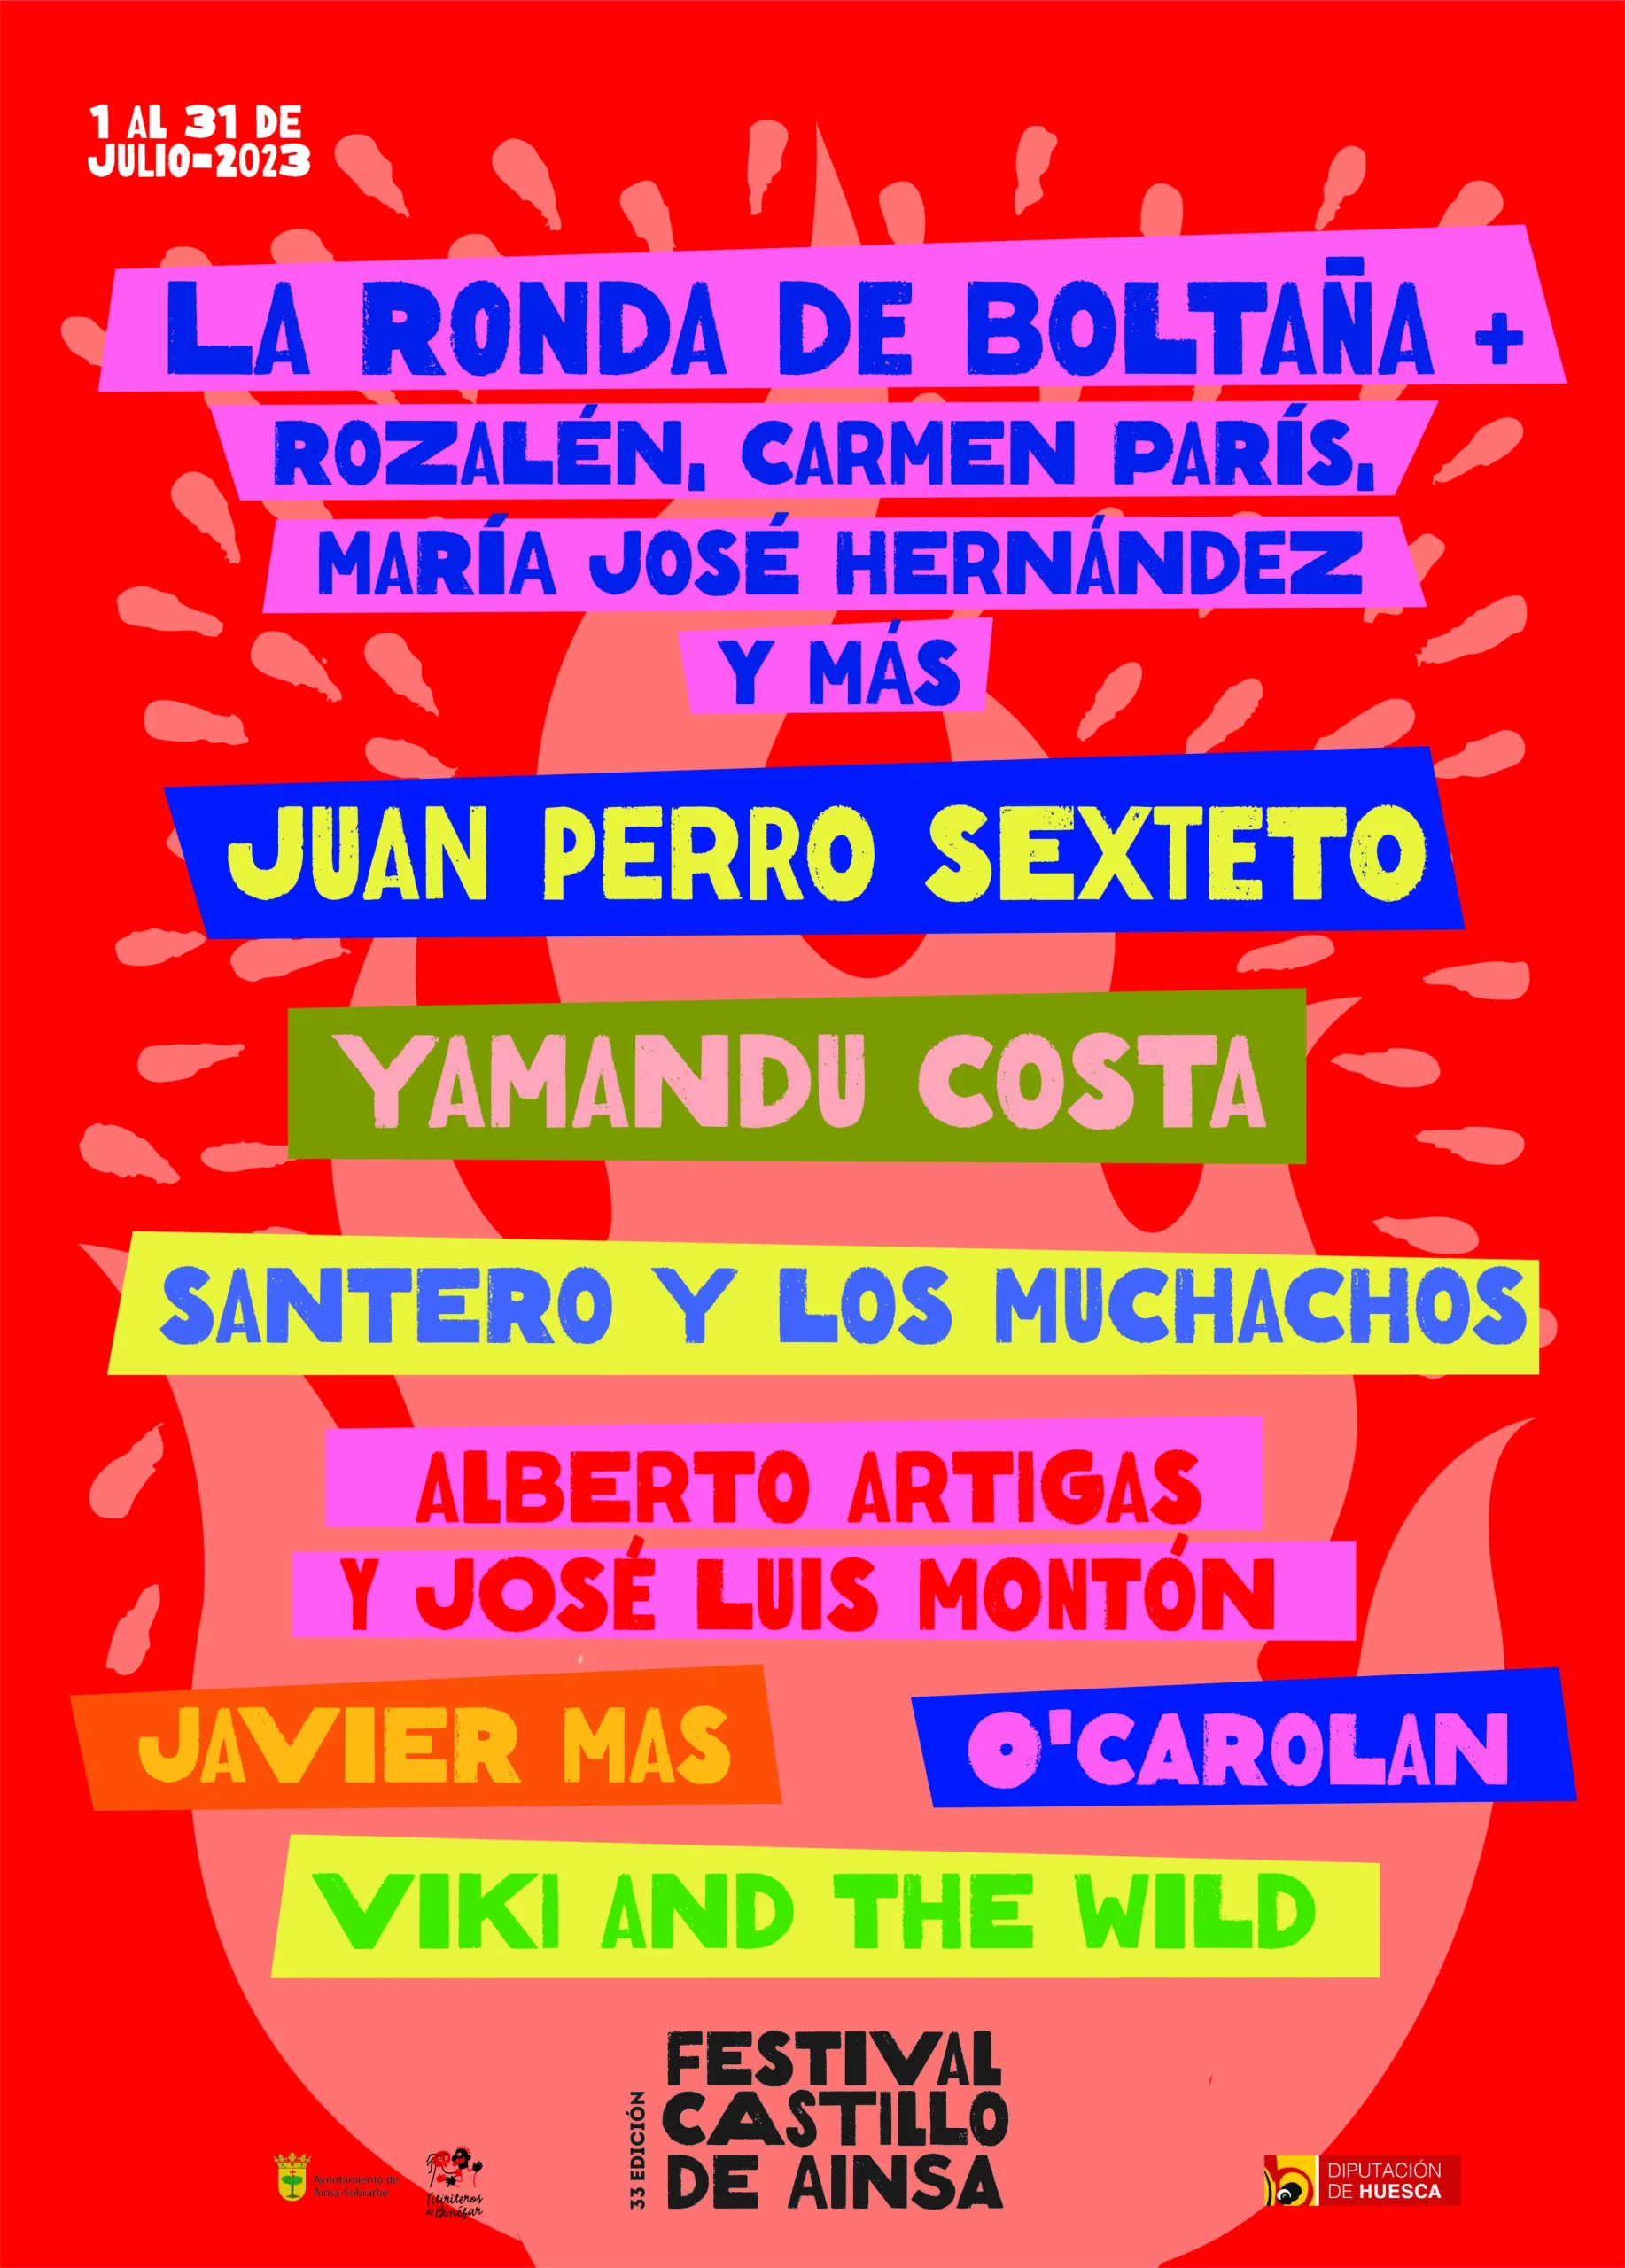 Cartel de uno de los festivales de Aragón: Festival del Castillo de Ainsa